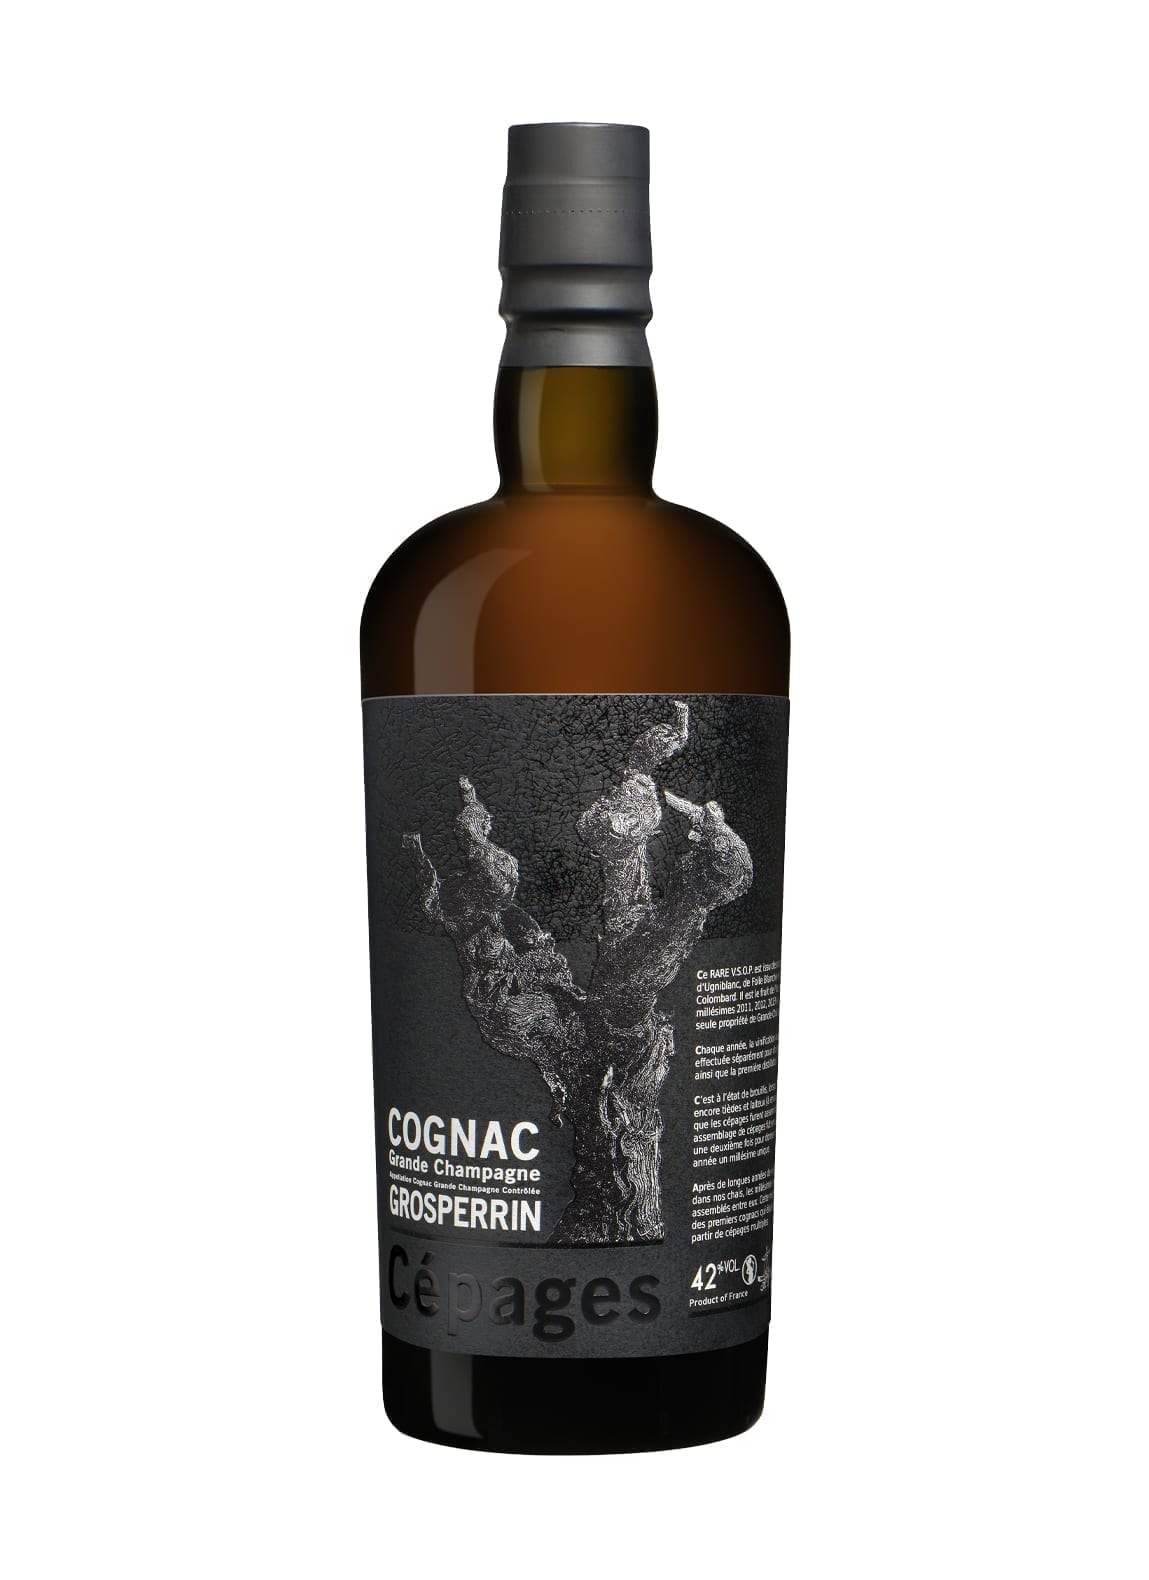 Grosperrin Cognac VSOP Grande Champagne 42% 700ml | Brandy | Shop online at Spirits of France